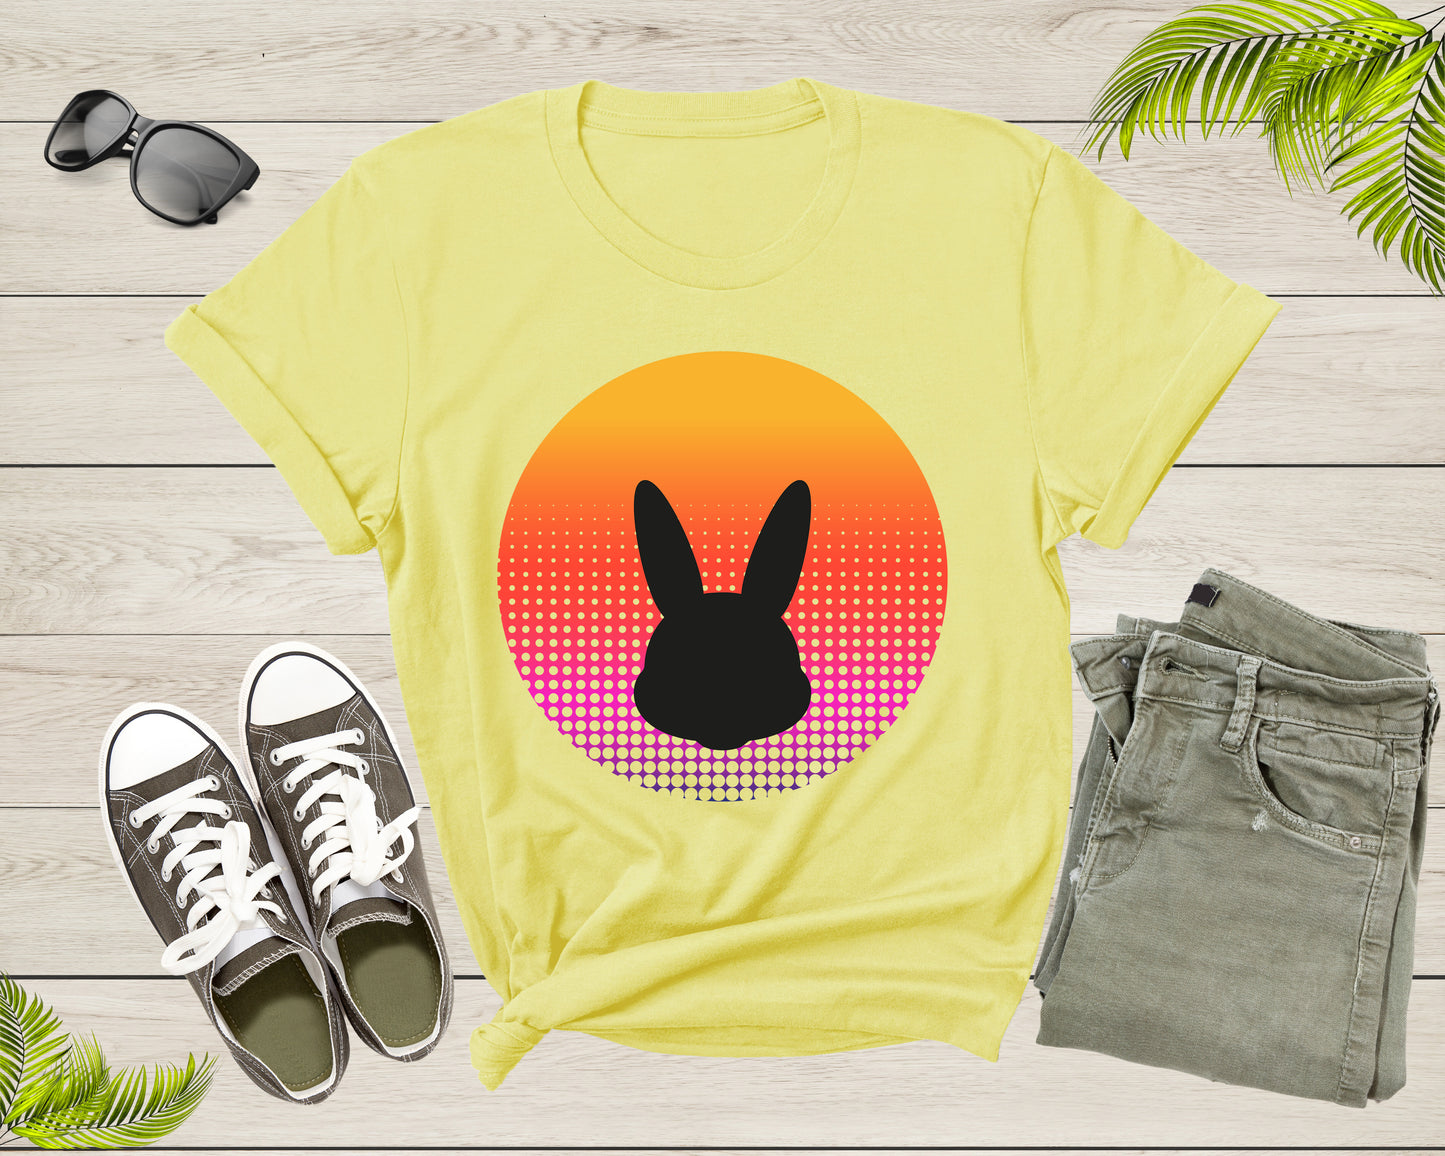 Cute Bunny Rabbit Animal Silhouette at Sunset for Men Women T-Shirt Bunny Lover Gift T Shirt for Men Women Kids Boys Girls Graphic TShirt